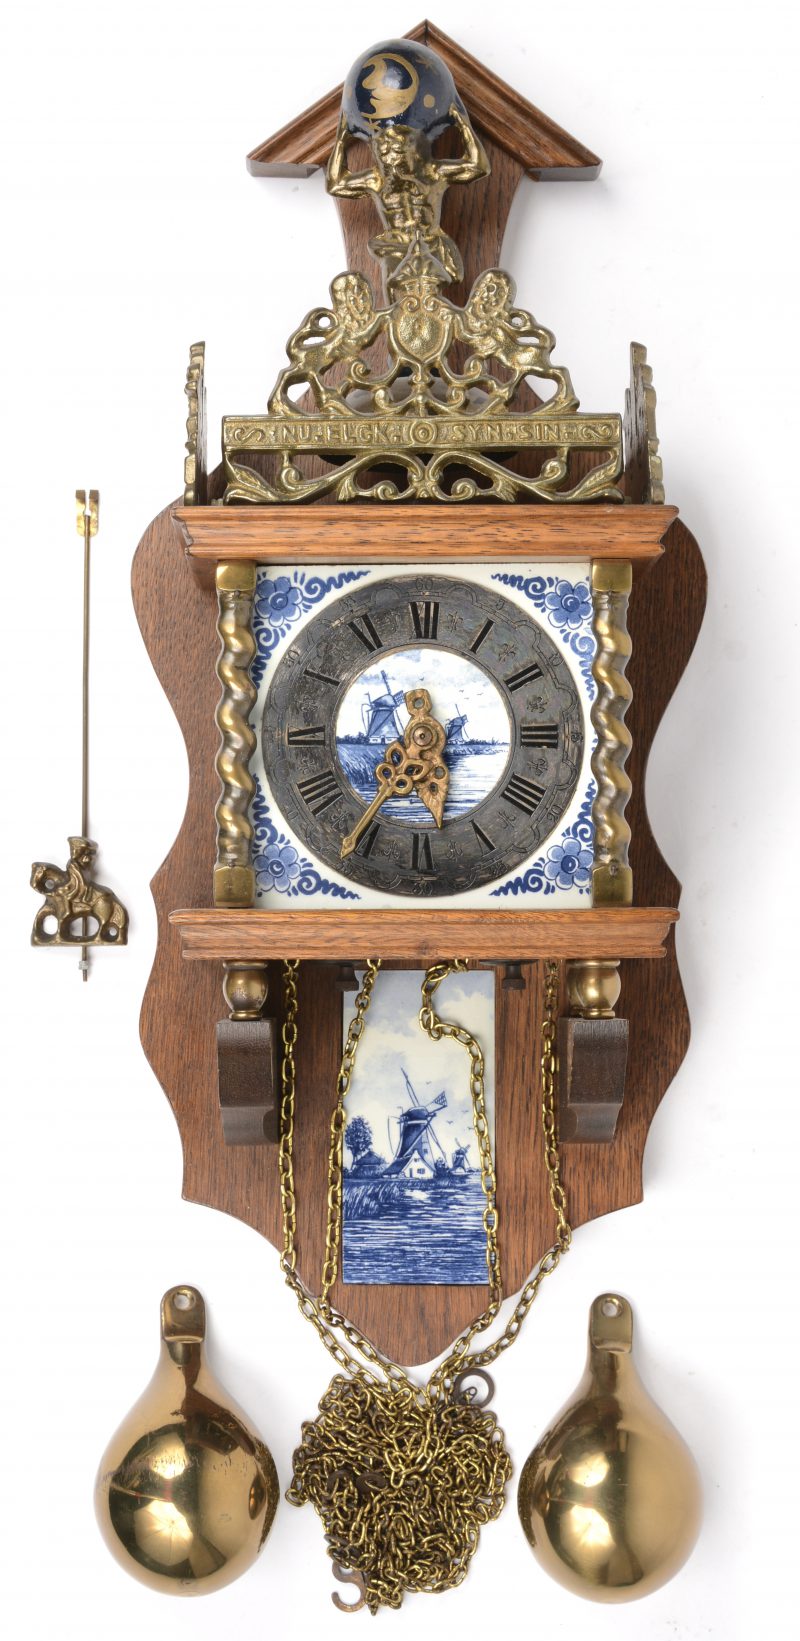 Een replica van een zaans klokje met atlas en geschrift “Nu elck syn sin”.